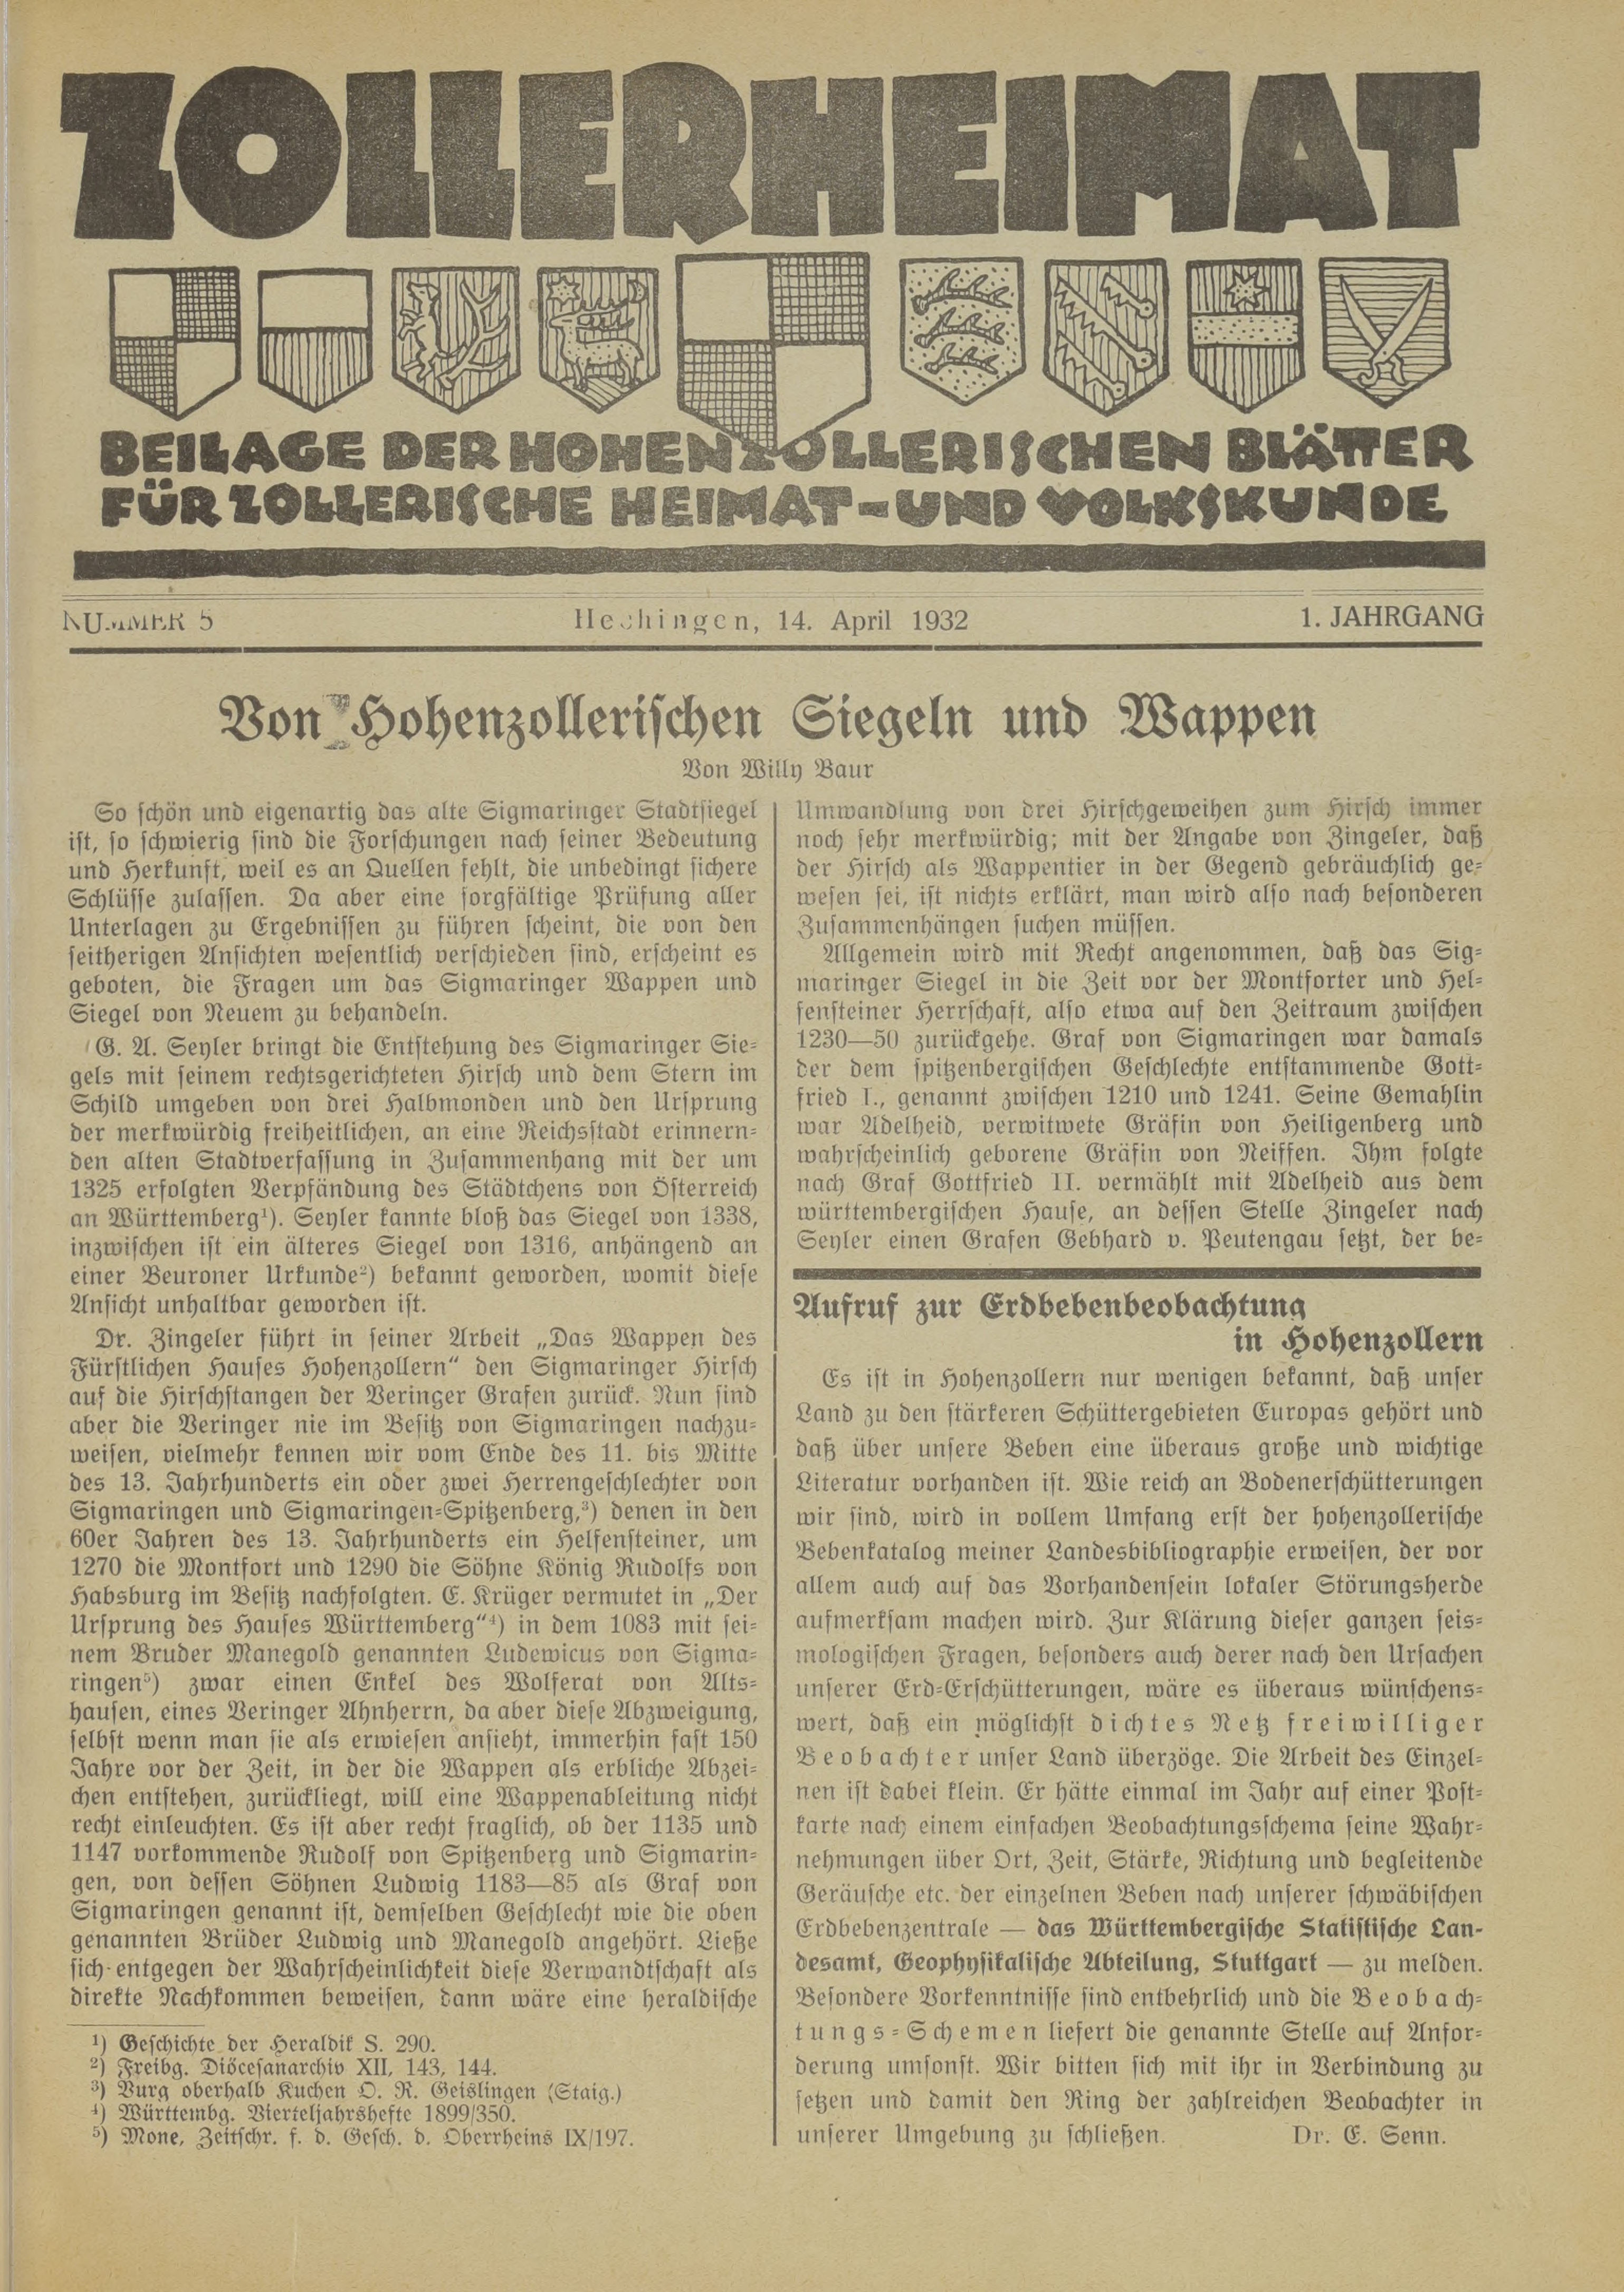                     Ansehen Bd. 1 Nr. 5 (1932): Zollerheimat
                